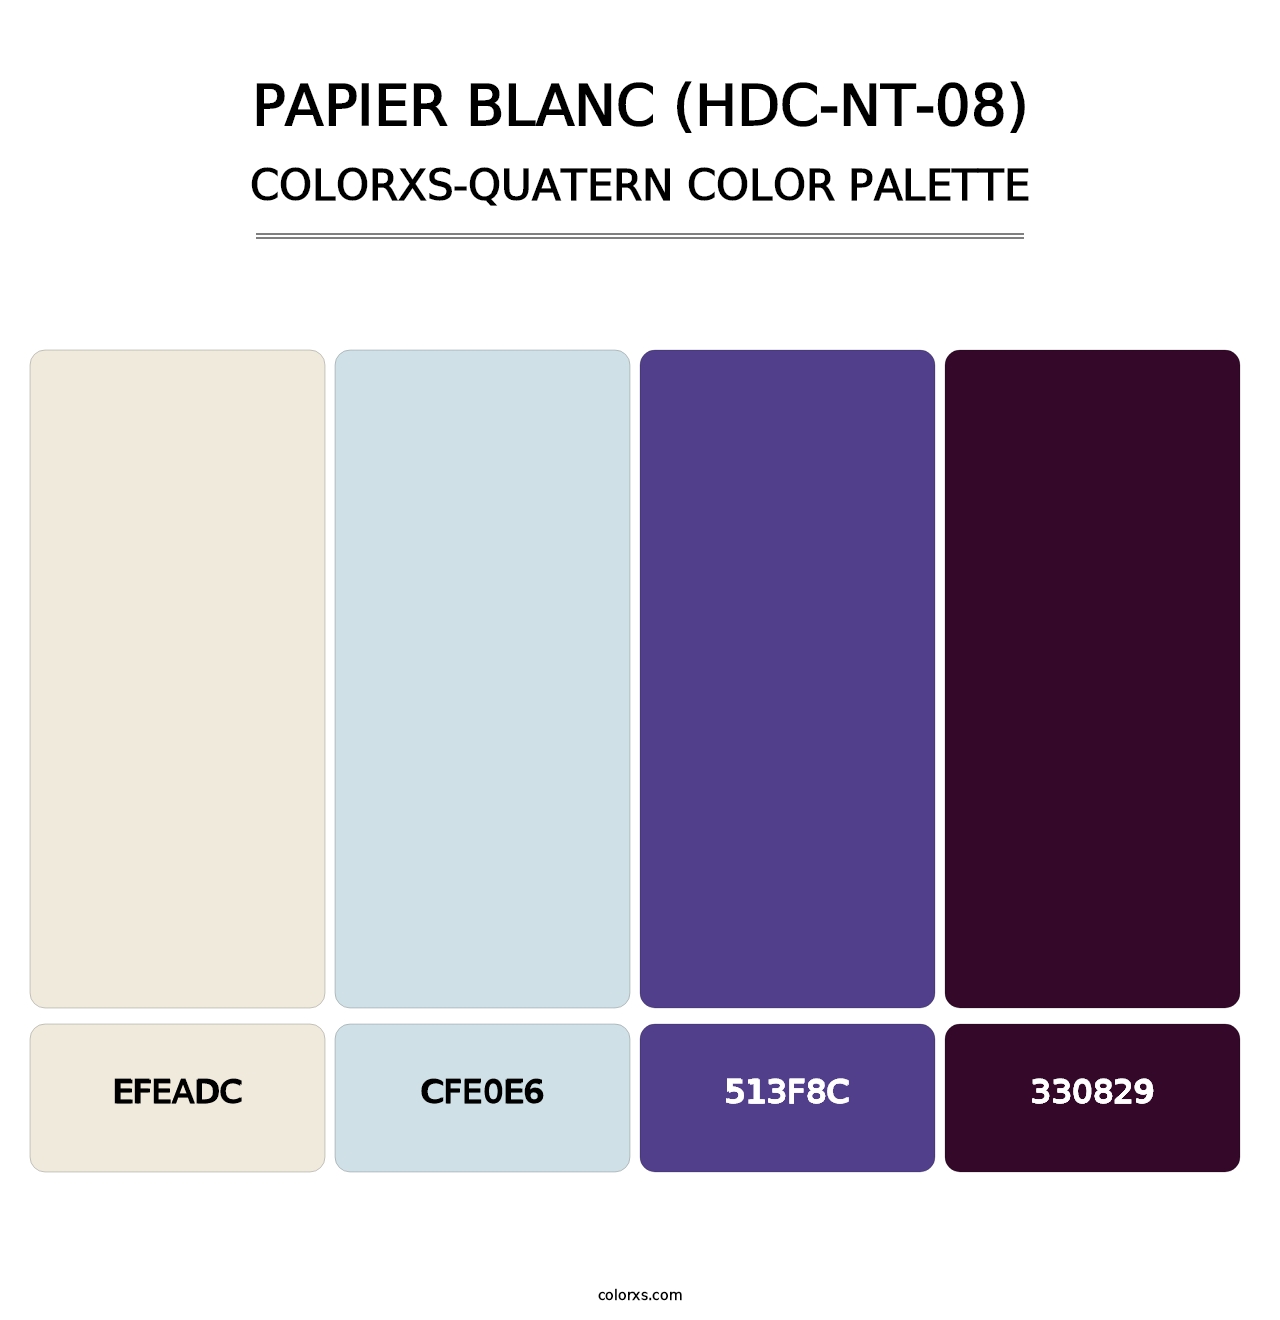 Papier Blanc (HDC-NT-08) - Colorxs Quatern Palette